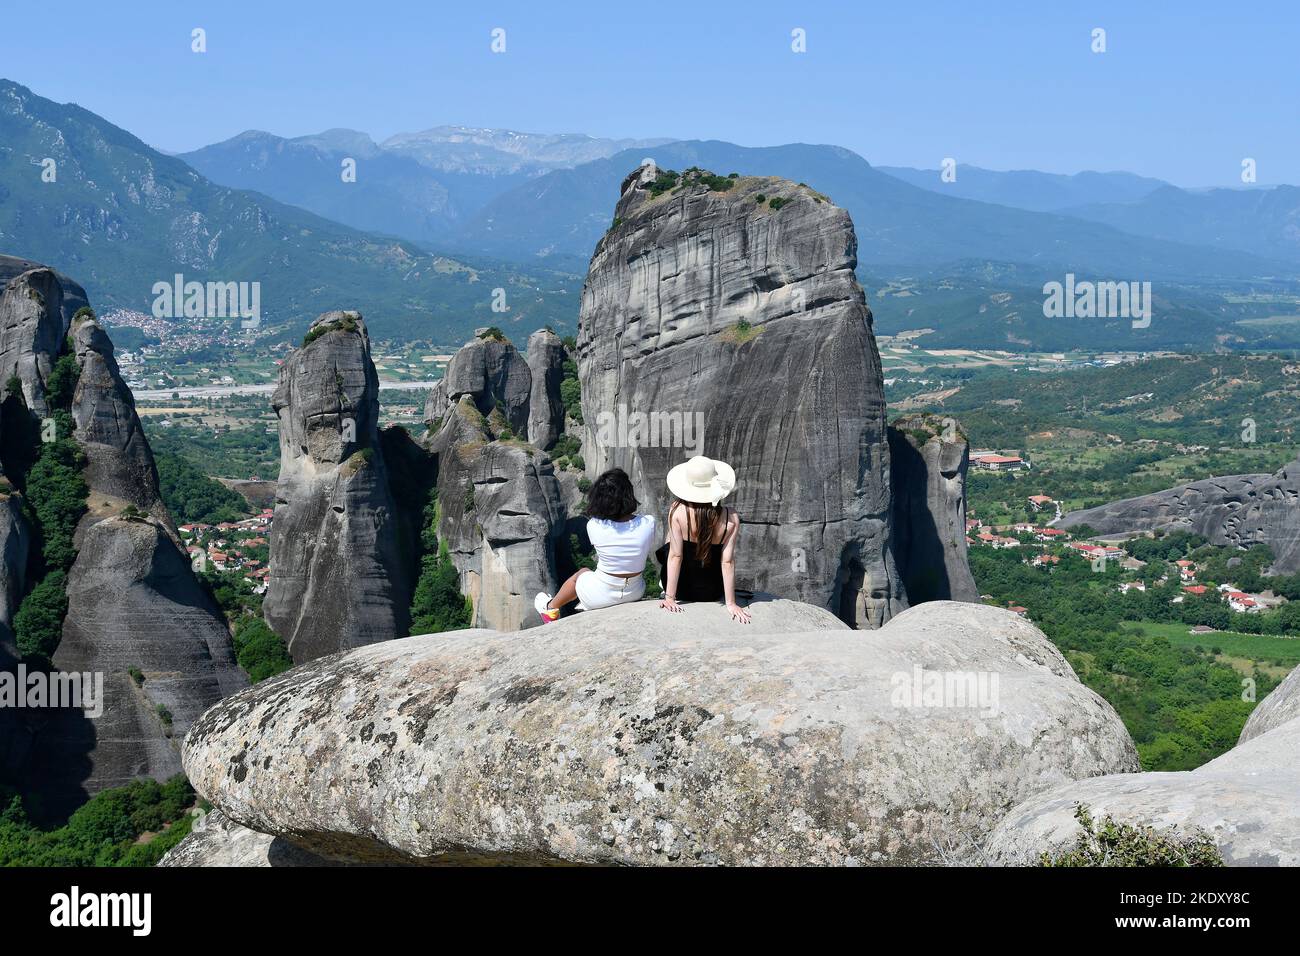 Grecia, dos mujeres no identificadas disfrutan de una vista sobre el gran paisaje de las rocas de Meteora en el lugar declarado Patrimonio de la Humanidad por la UNESCO en Tesalia Foto de stock